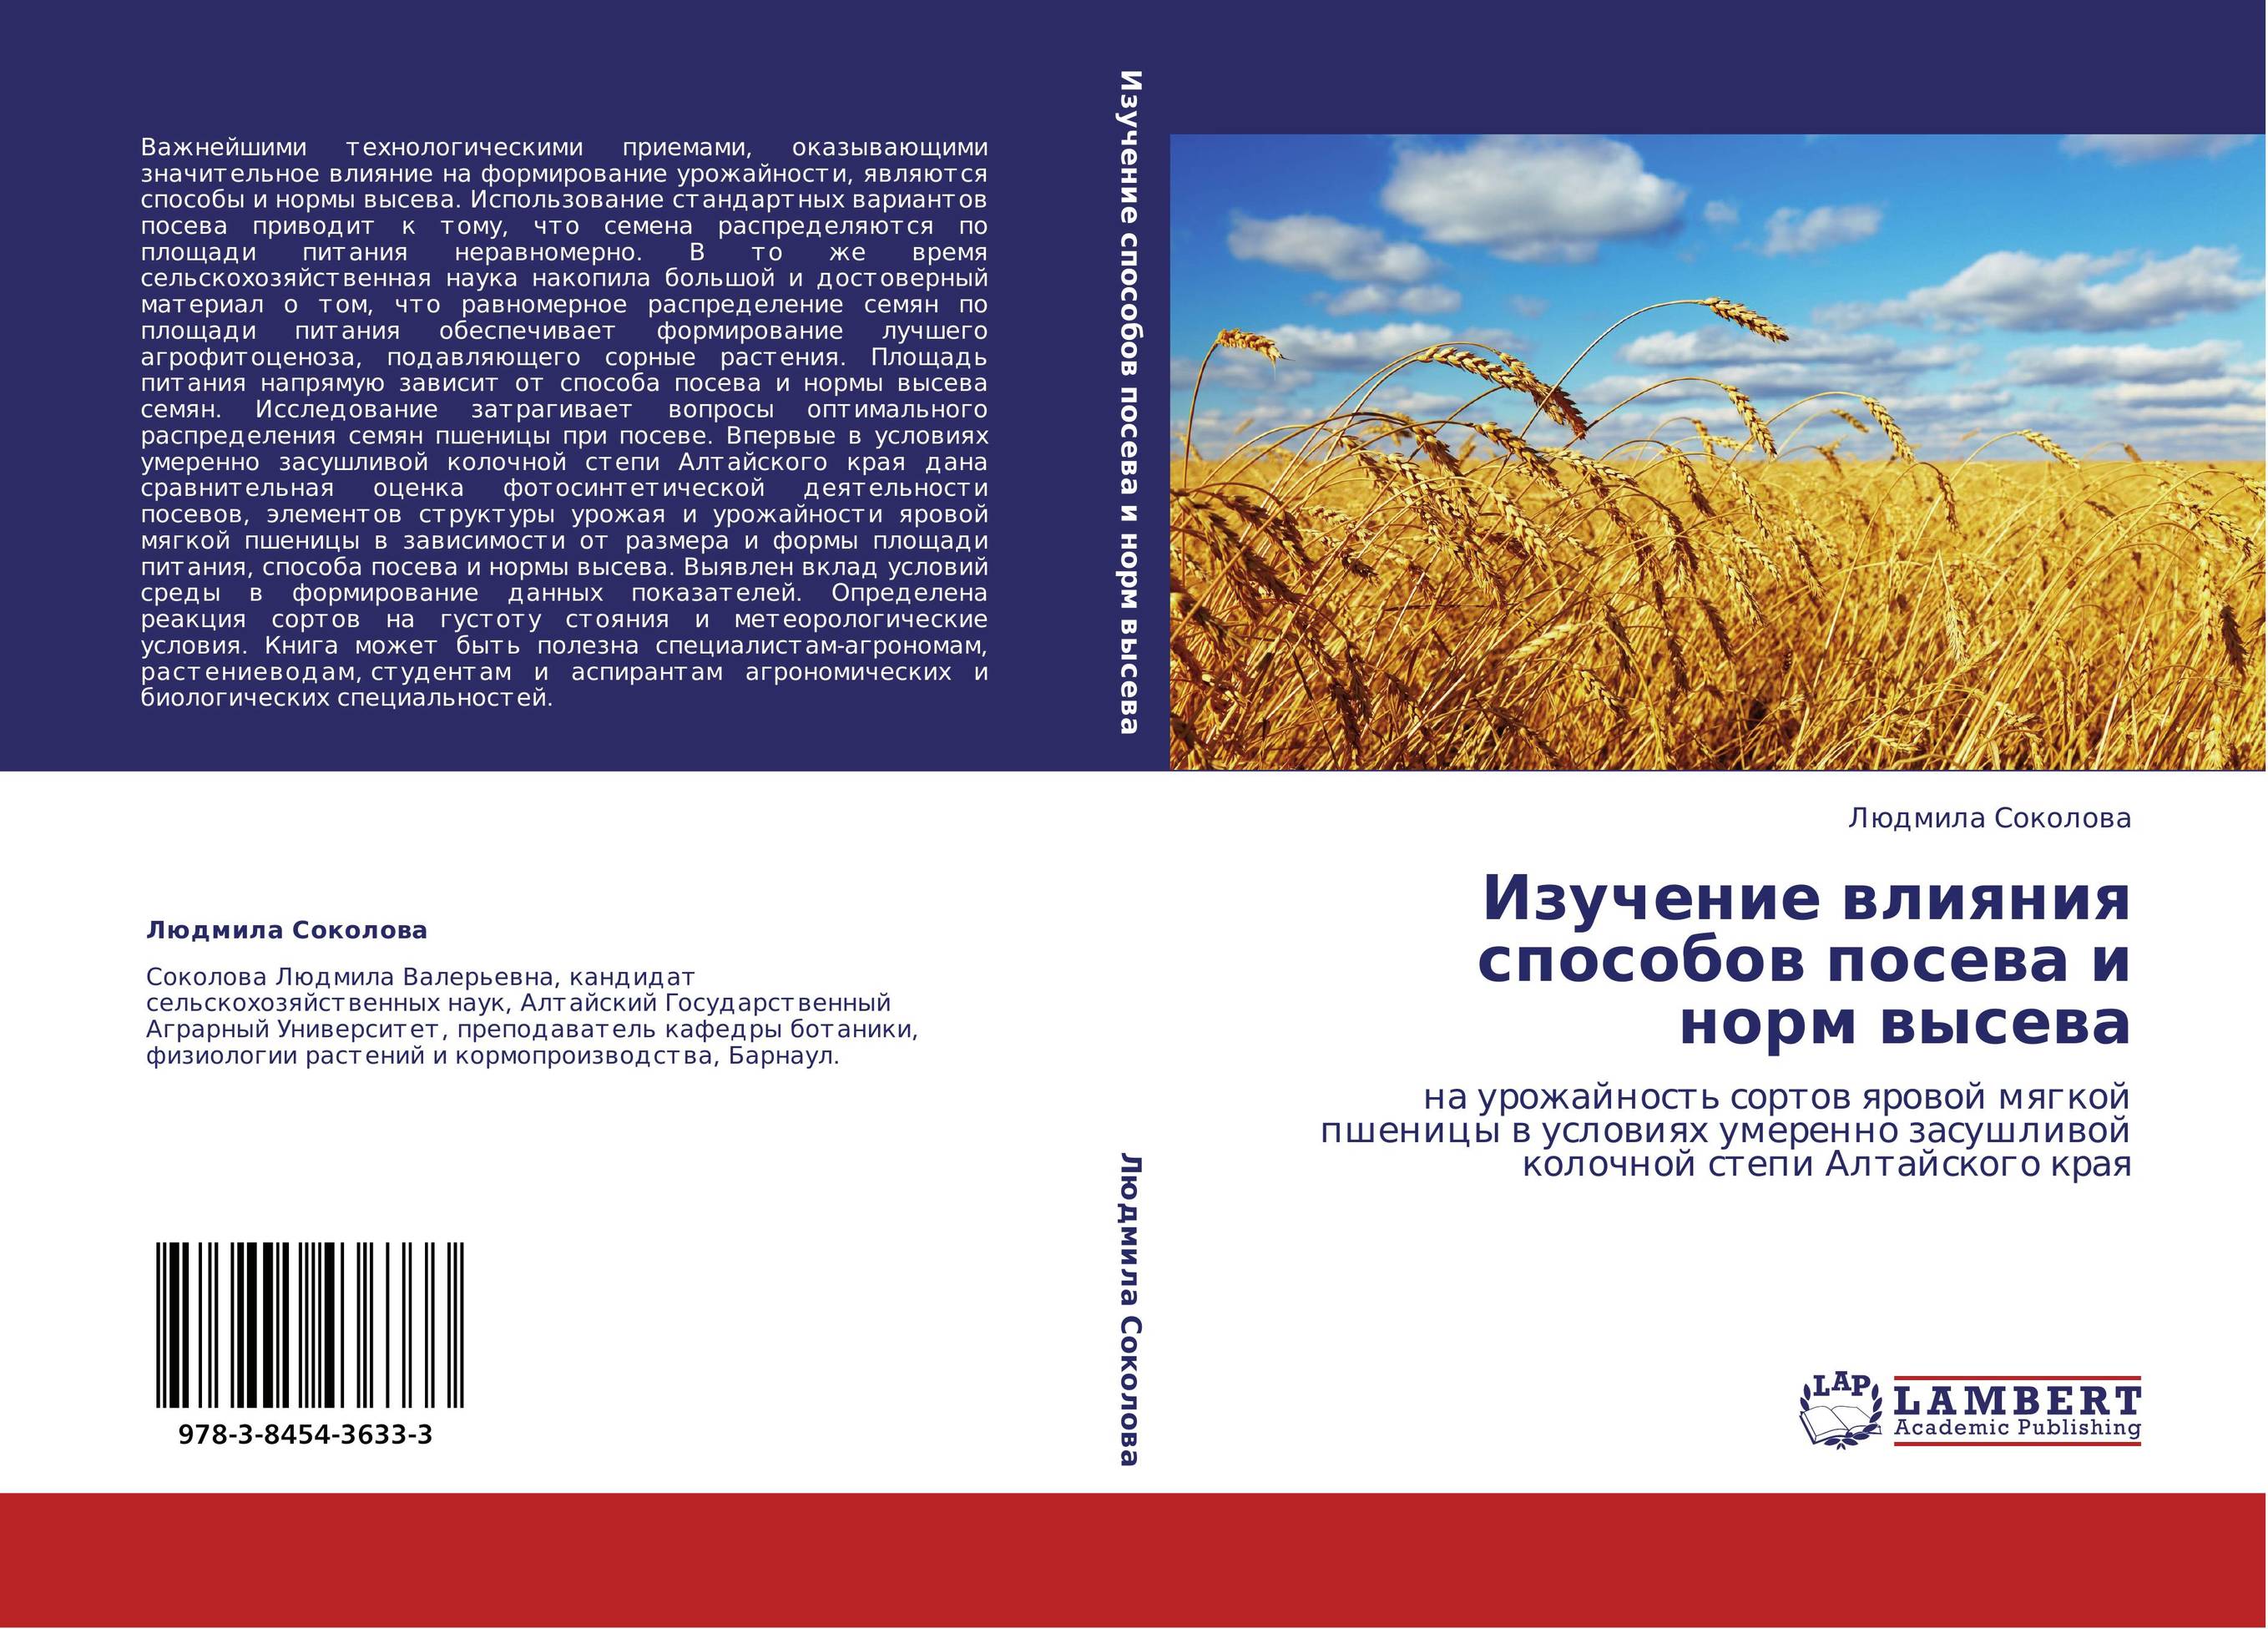 Изучение влияния способов посева и норм высева. На урожайность сортов яровой мягкой пшеницы в условиях умеренно засушливой колочной степи Алтайского края.